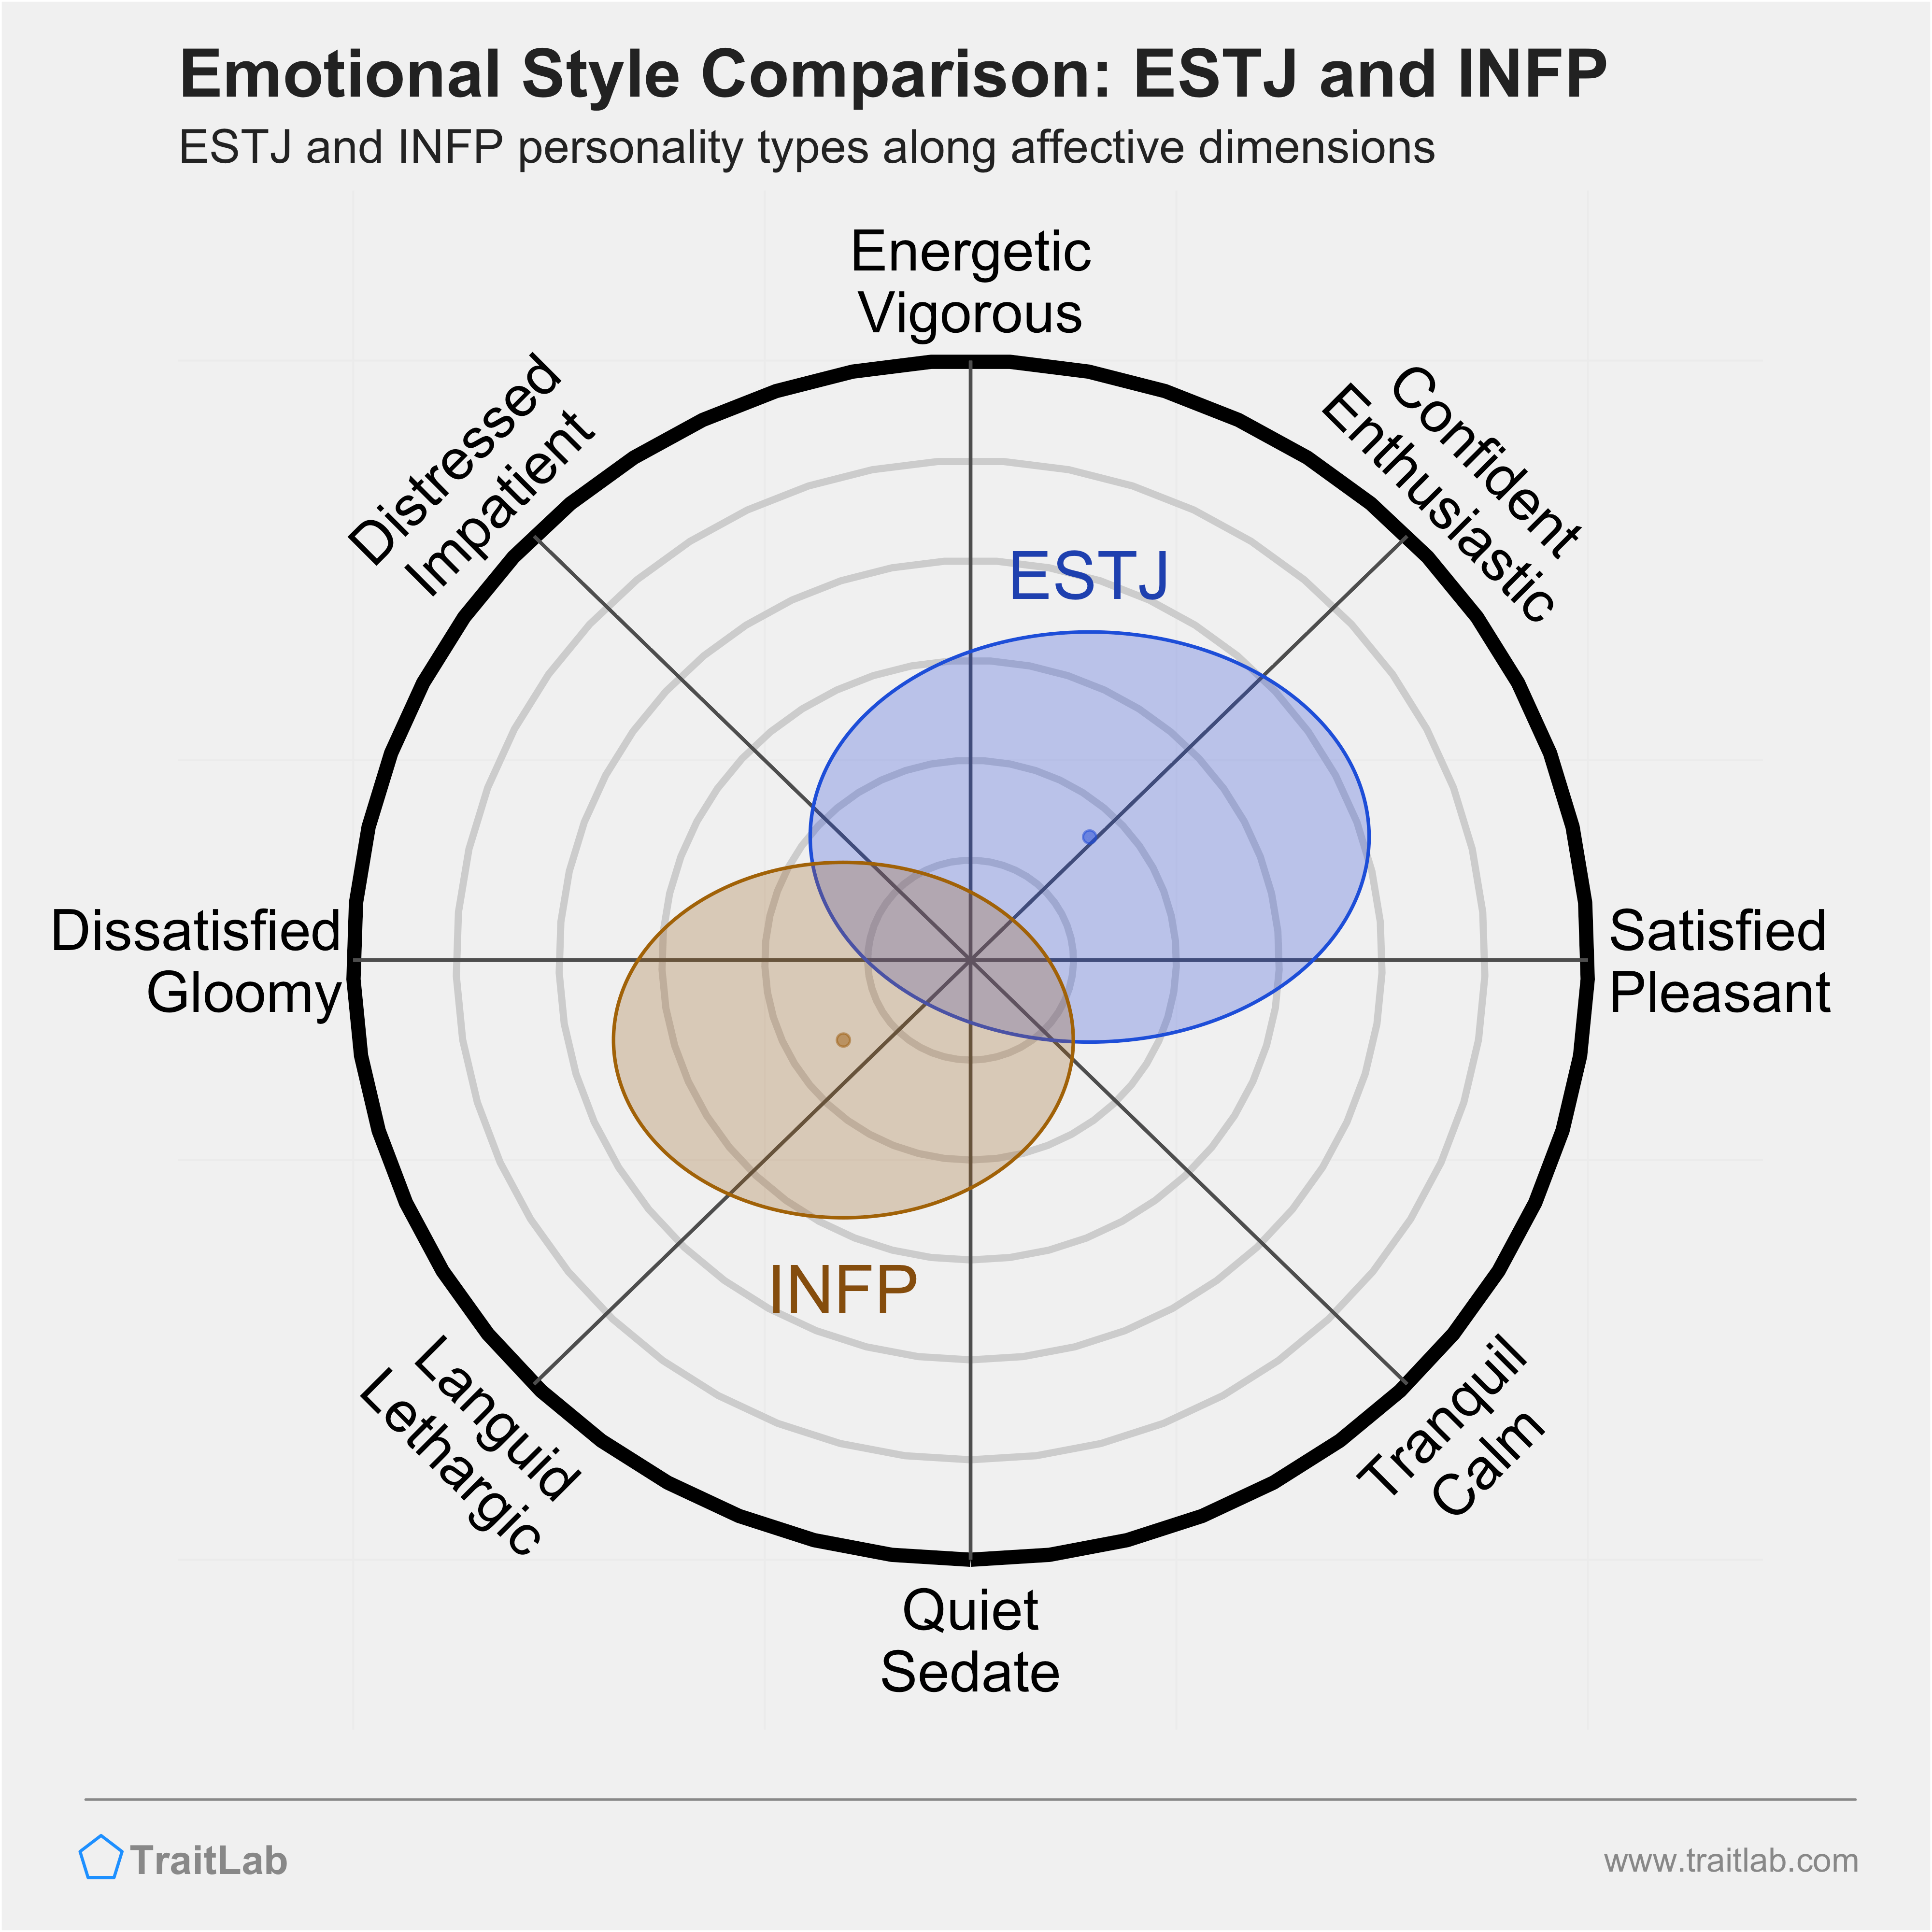 ESTJ and INFP comparison across emotional (affective) dimensions